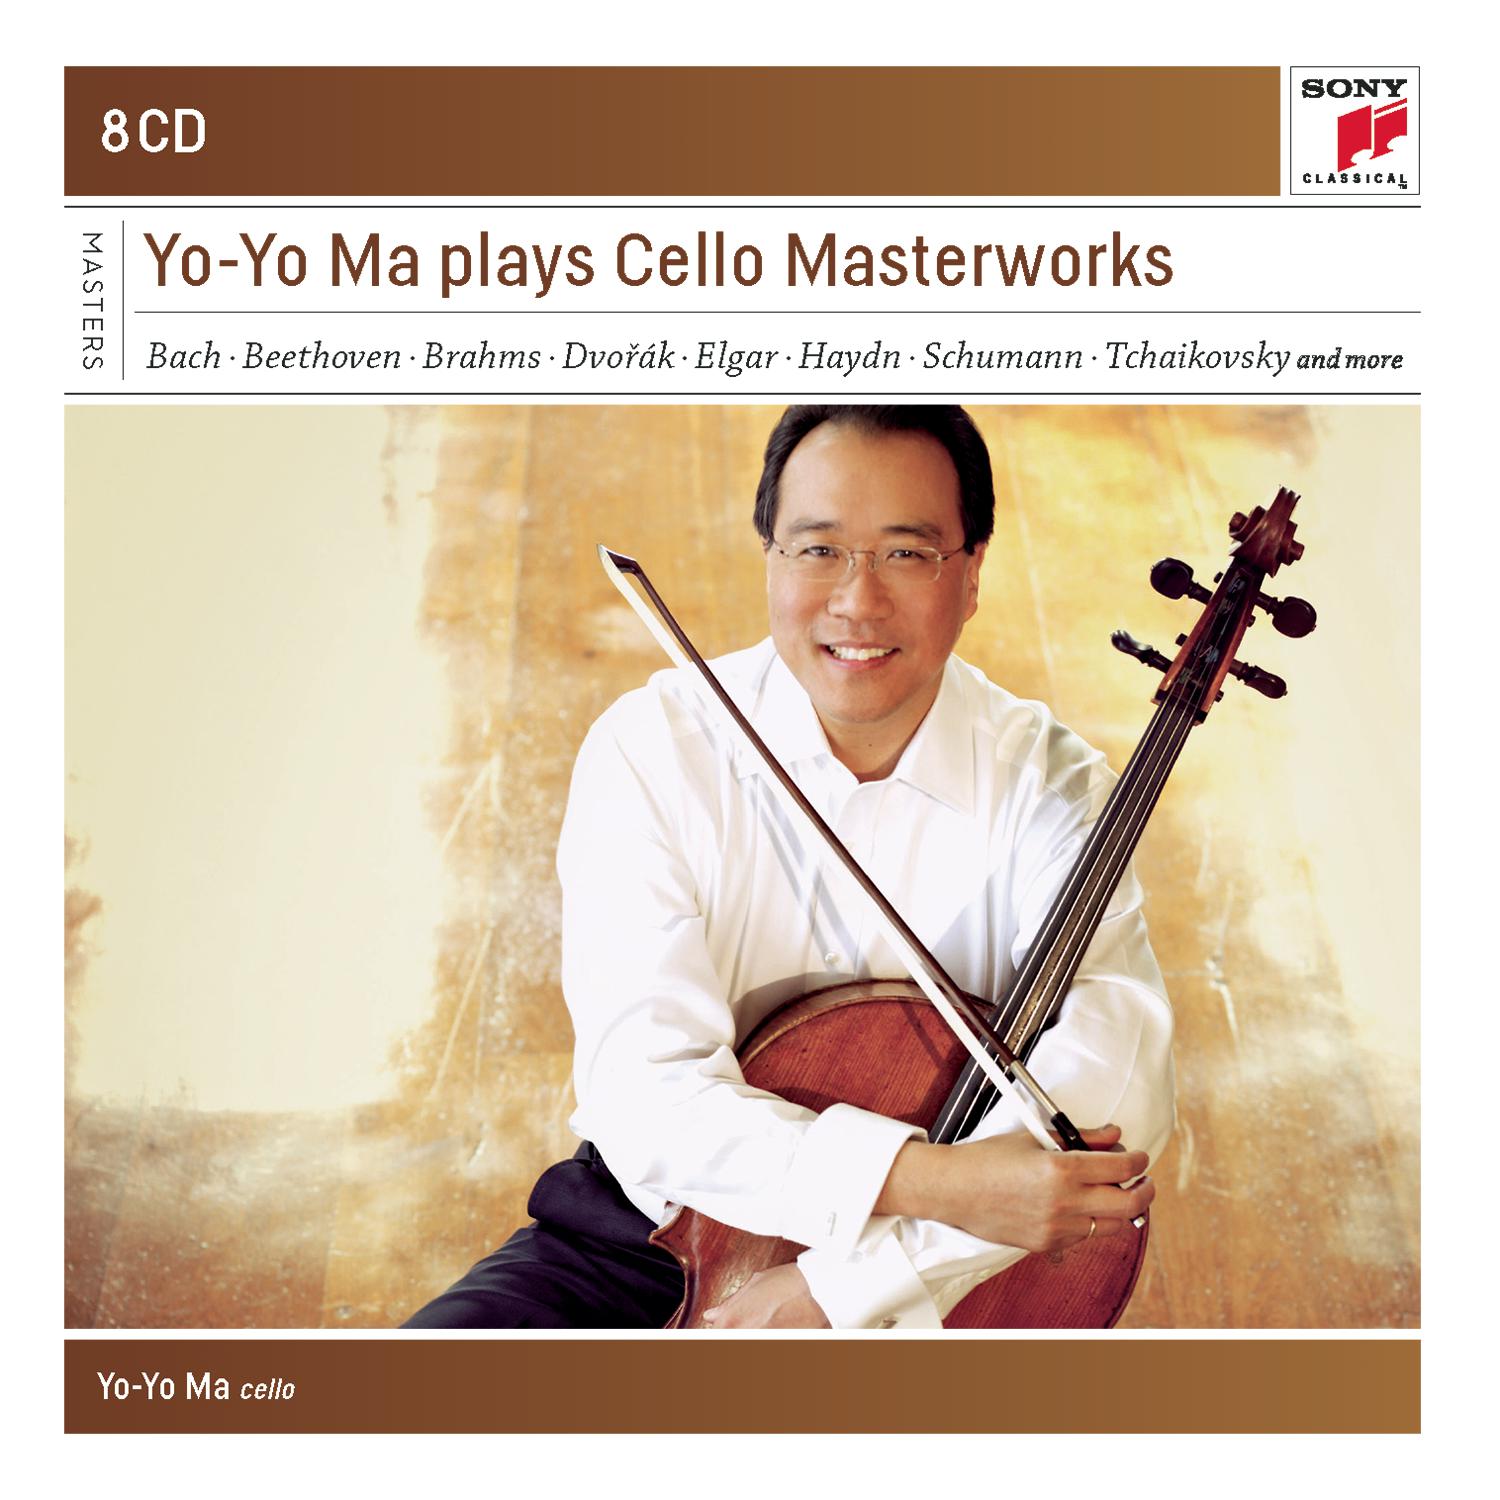 Yo-Yo Ma plays Concertos, Sonatas and Suites